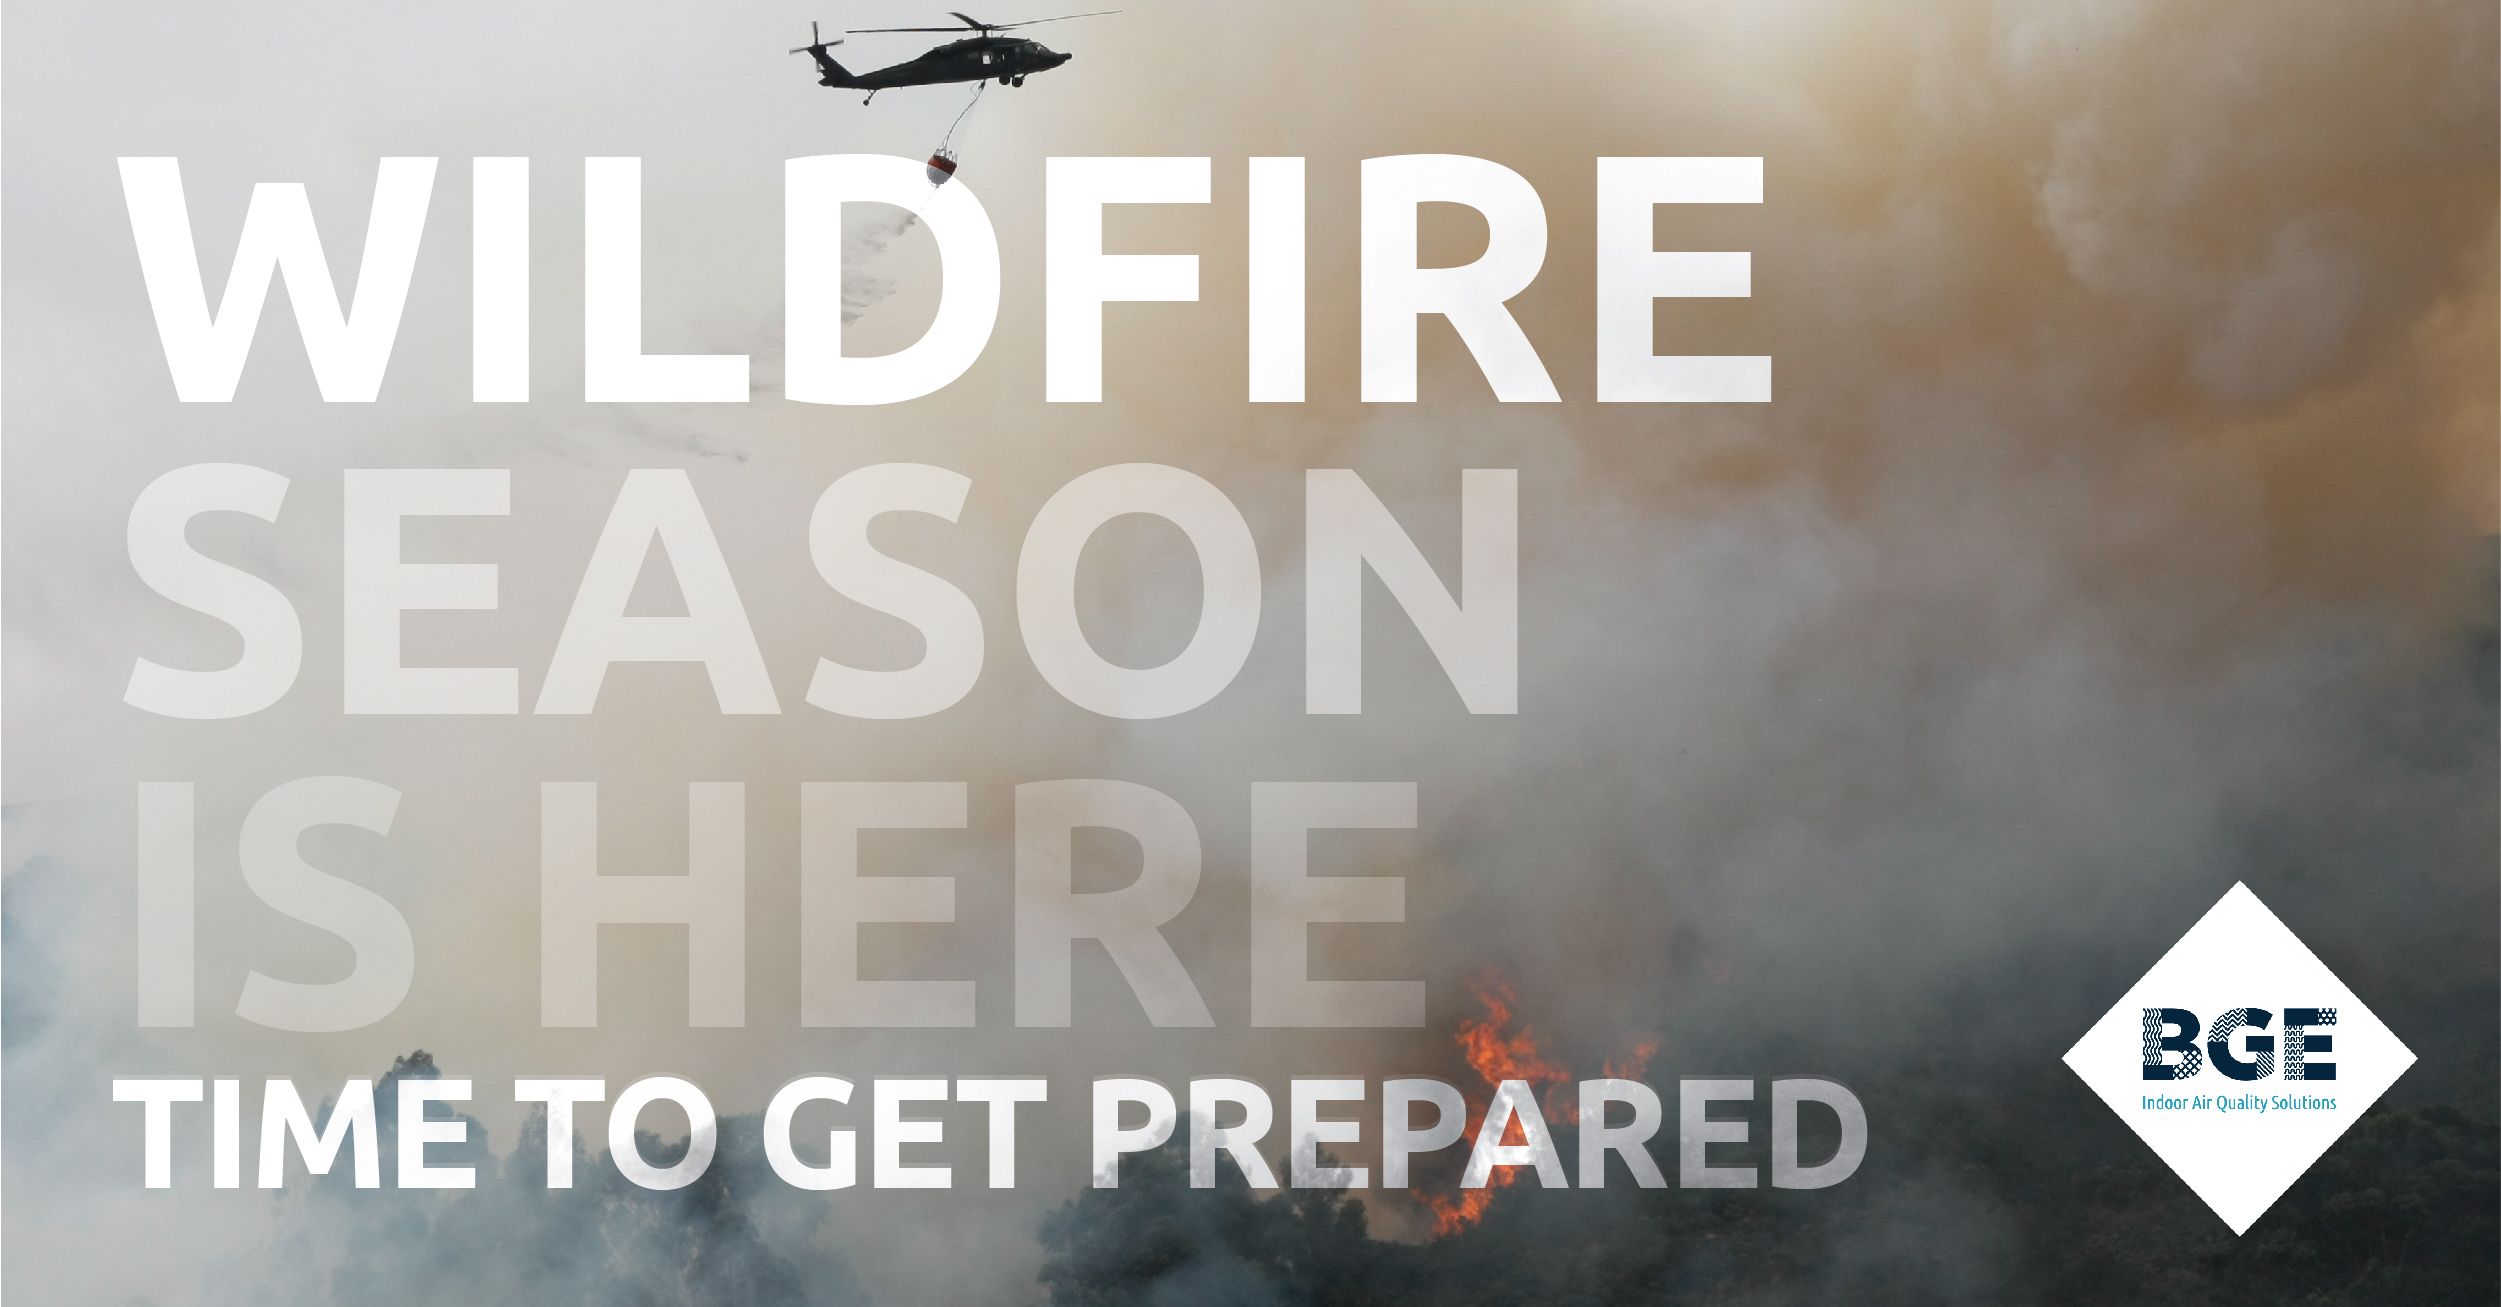 Are You Prepared For Wildfire Season?